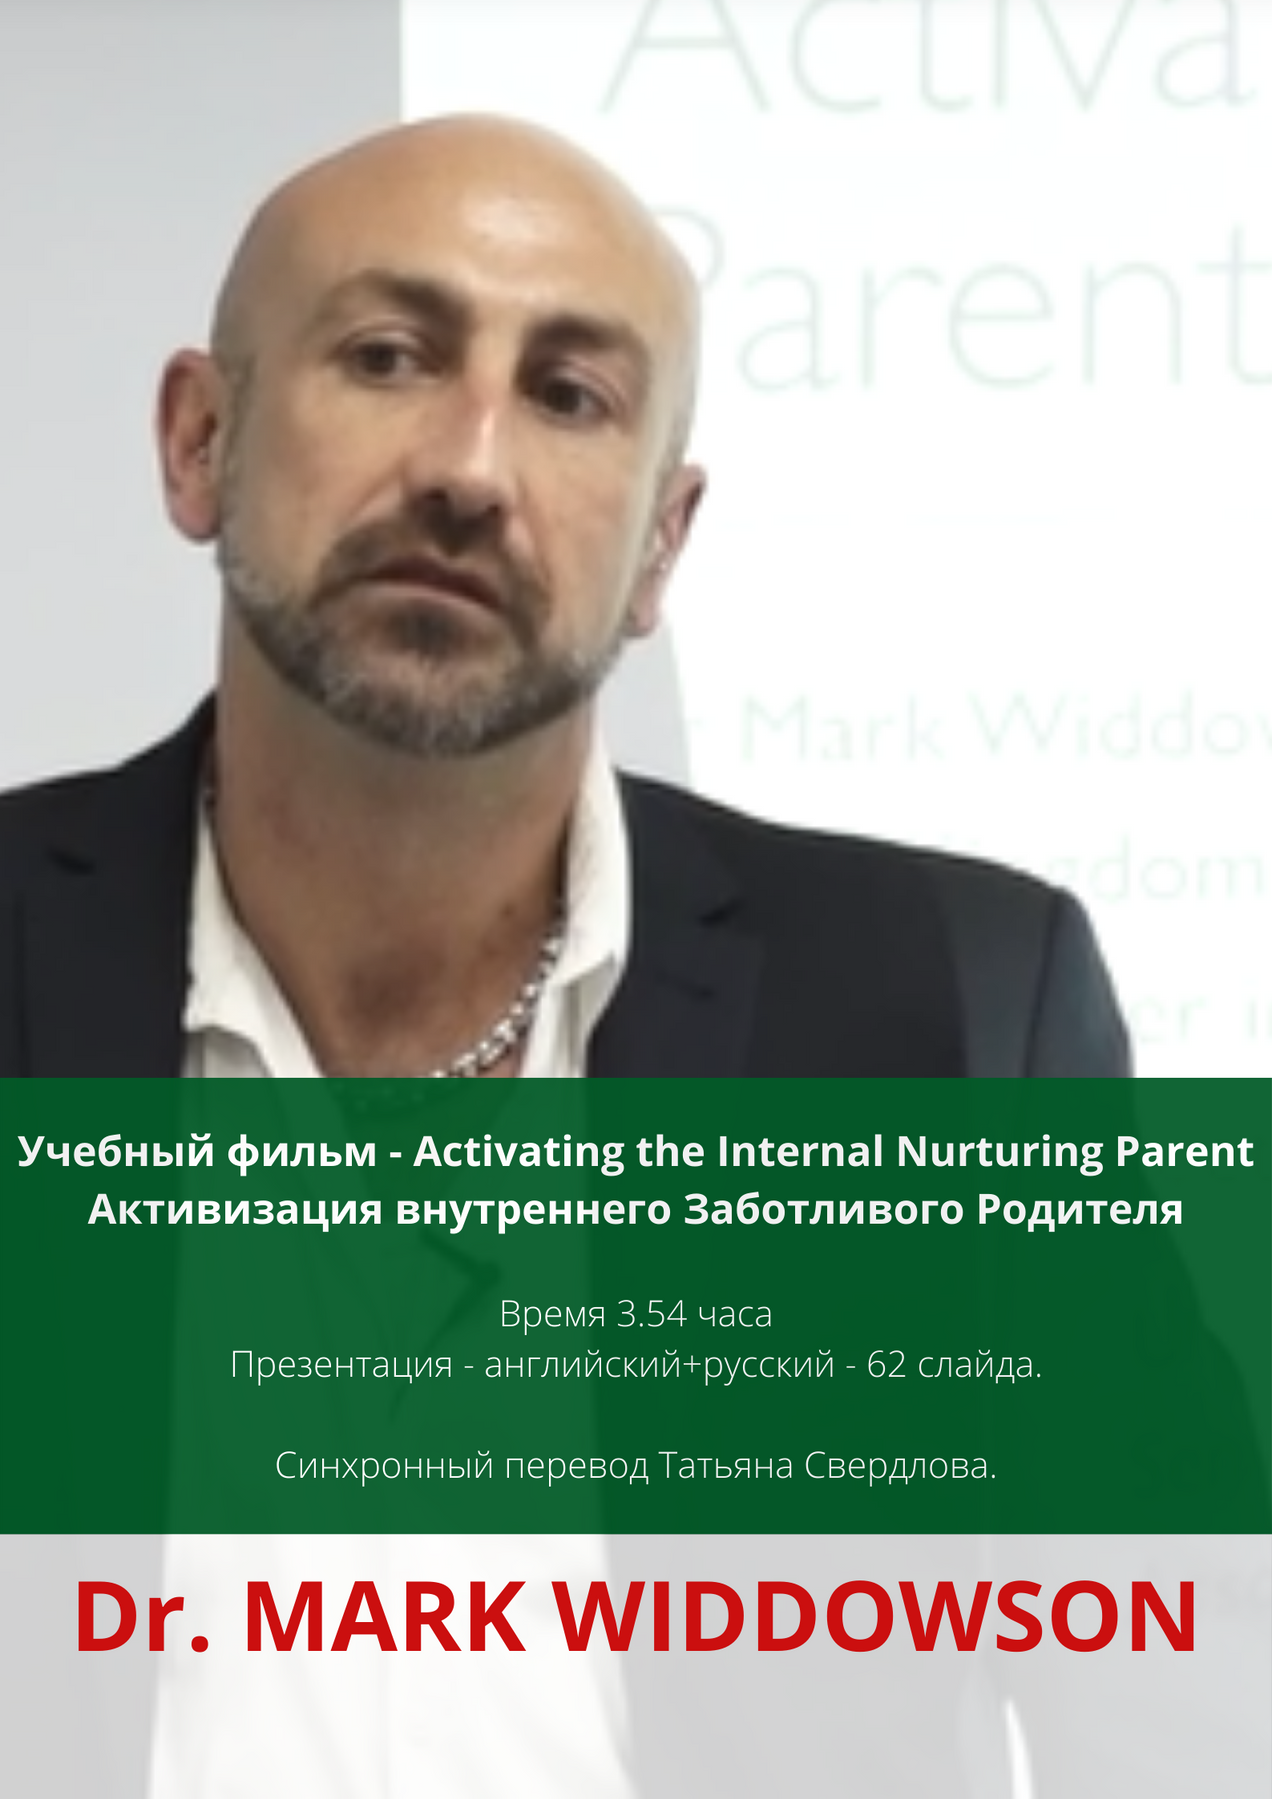 Dr. MARK WIDDOWSON "Activating the Internal Nurturing Parent" Активизация внутреннего Заботливого Родителя